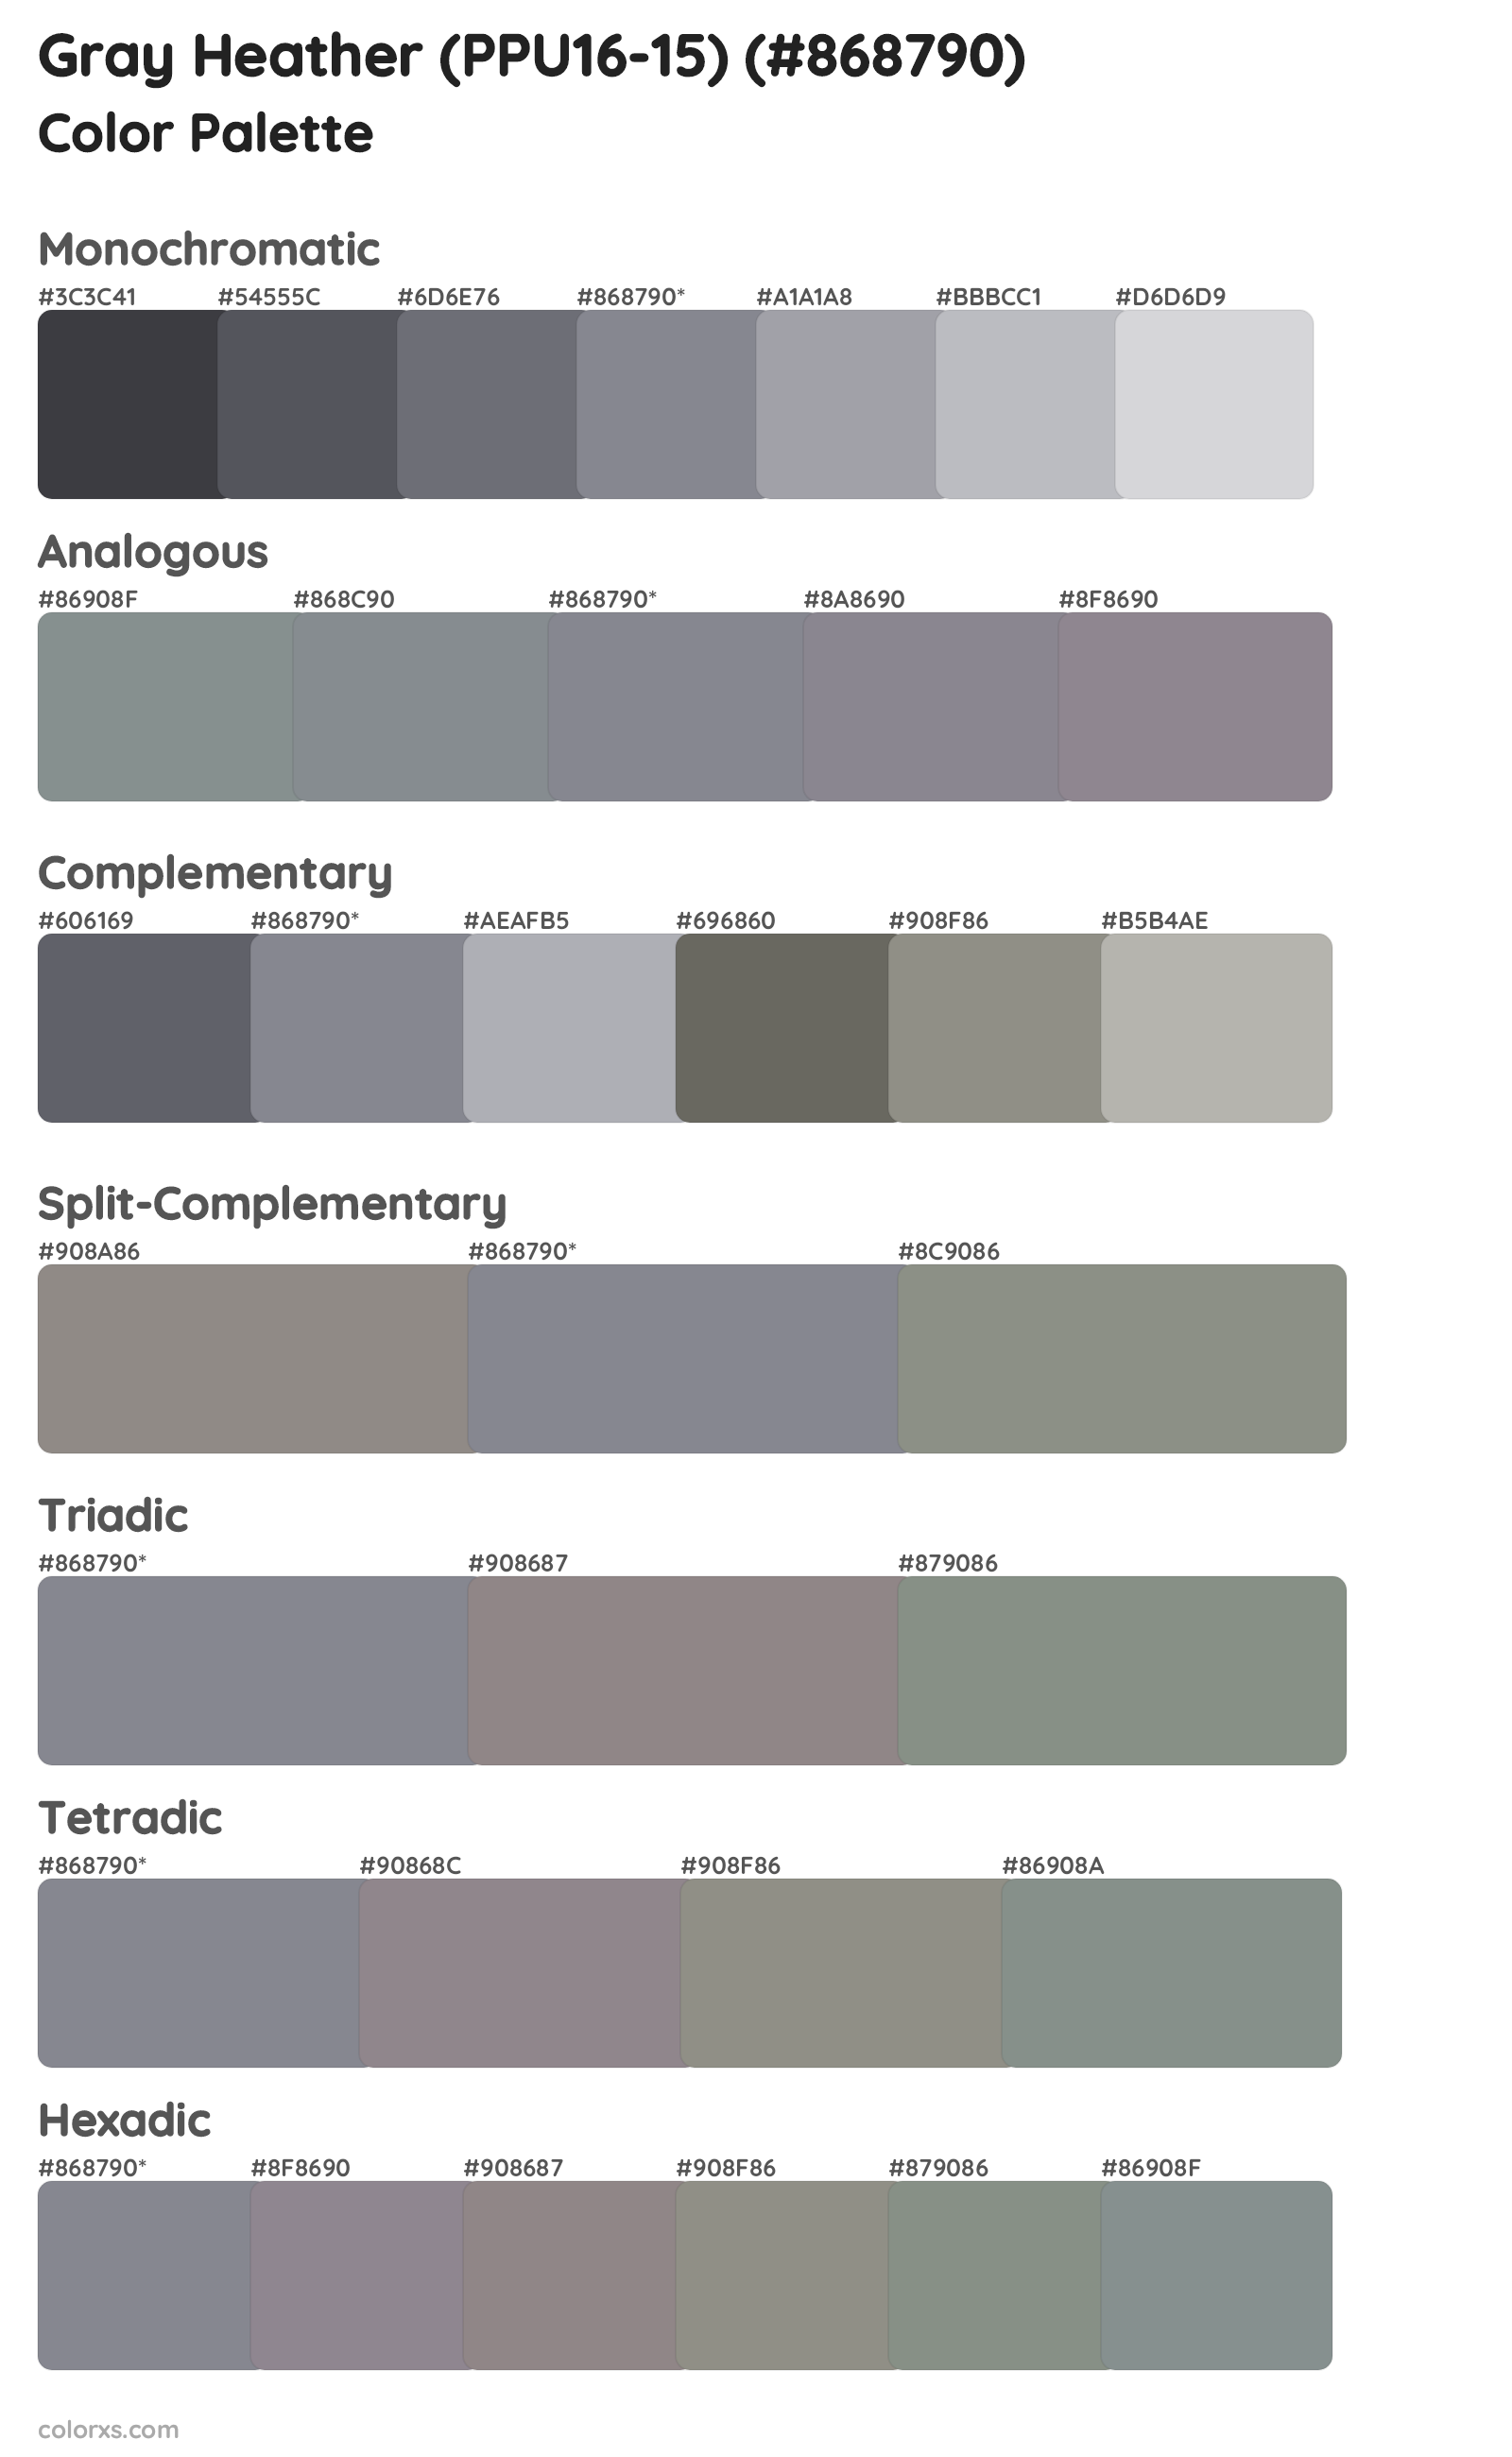 Gray Heather (PPU16-15) Color Scheme Palettes